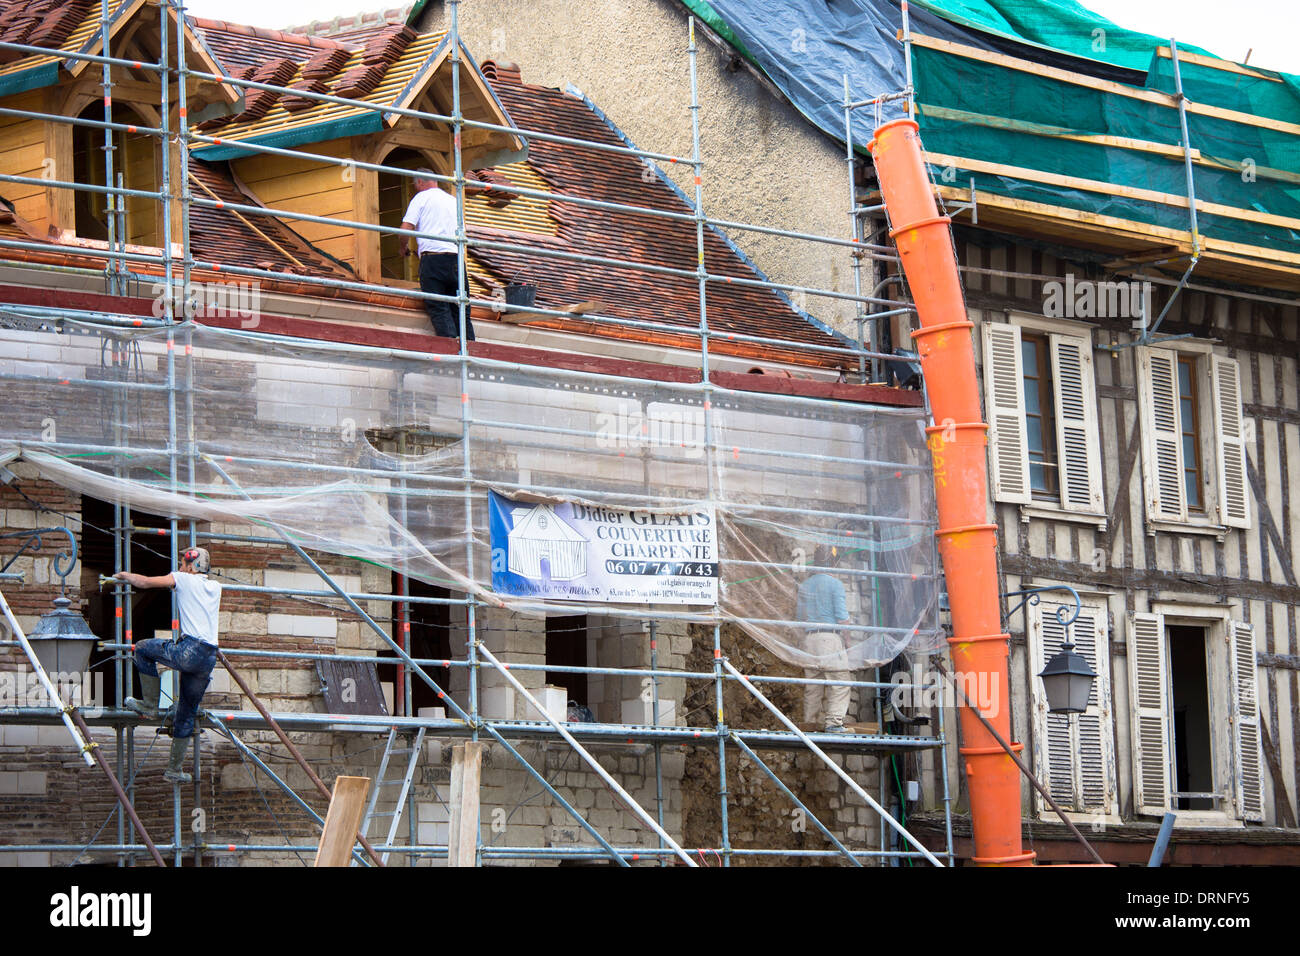 Des travaux de rénovation s'y côtoient à l'architecture médiévale traditionnelle à ossature de bois à Troyes, dans la région Champagne-Ardenne de France Banque D'Images